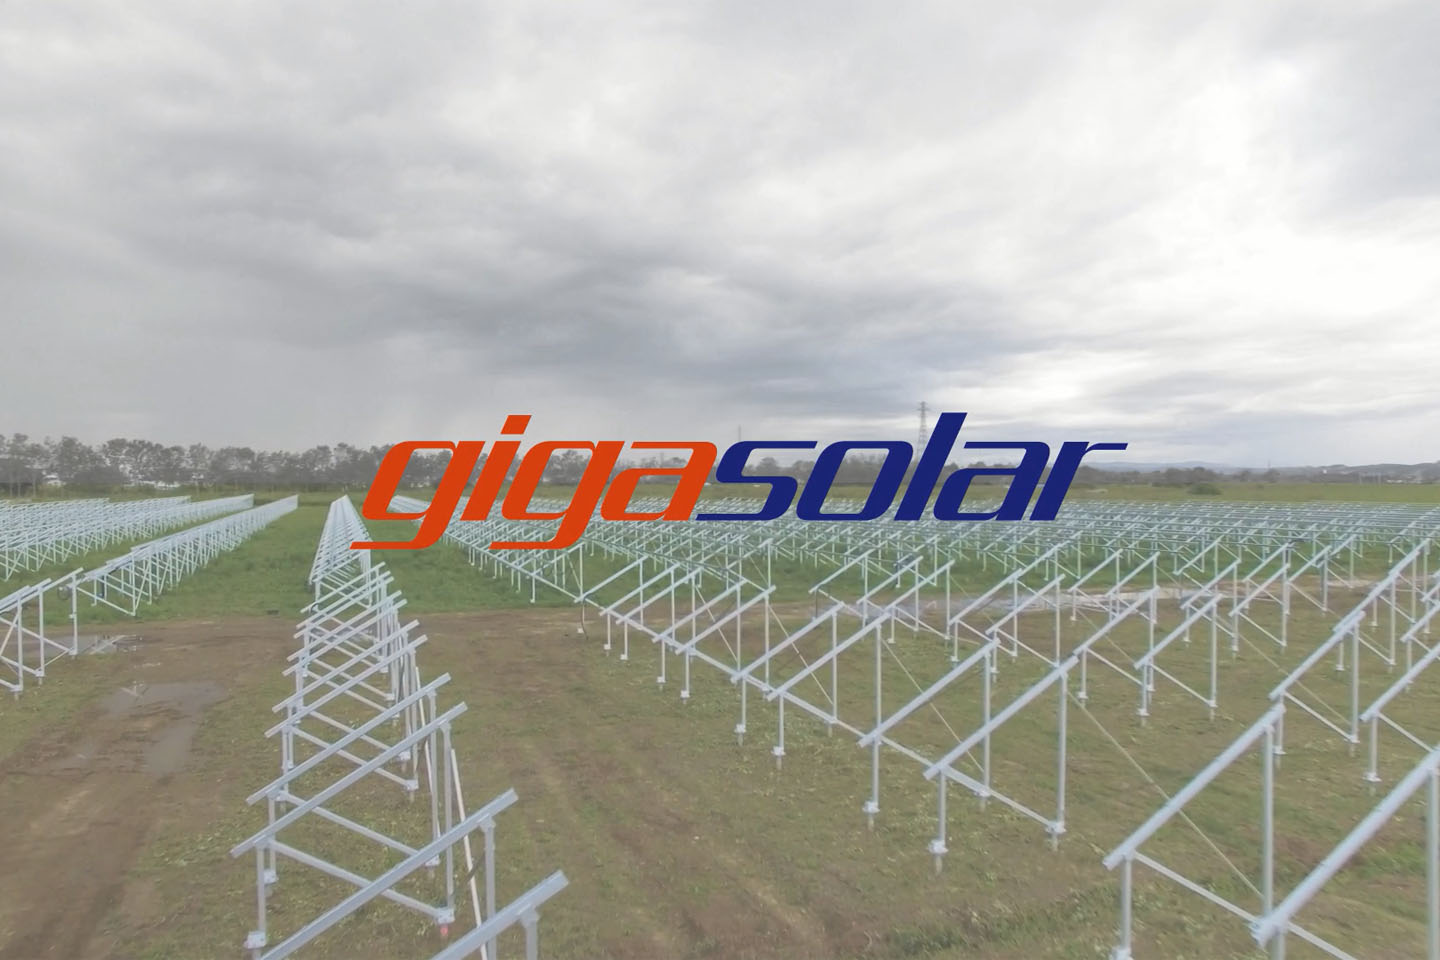 Case Study: Entretien de l'herbe du parc photovoltaïque